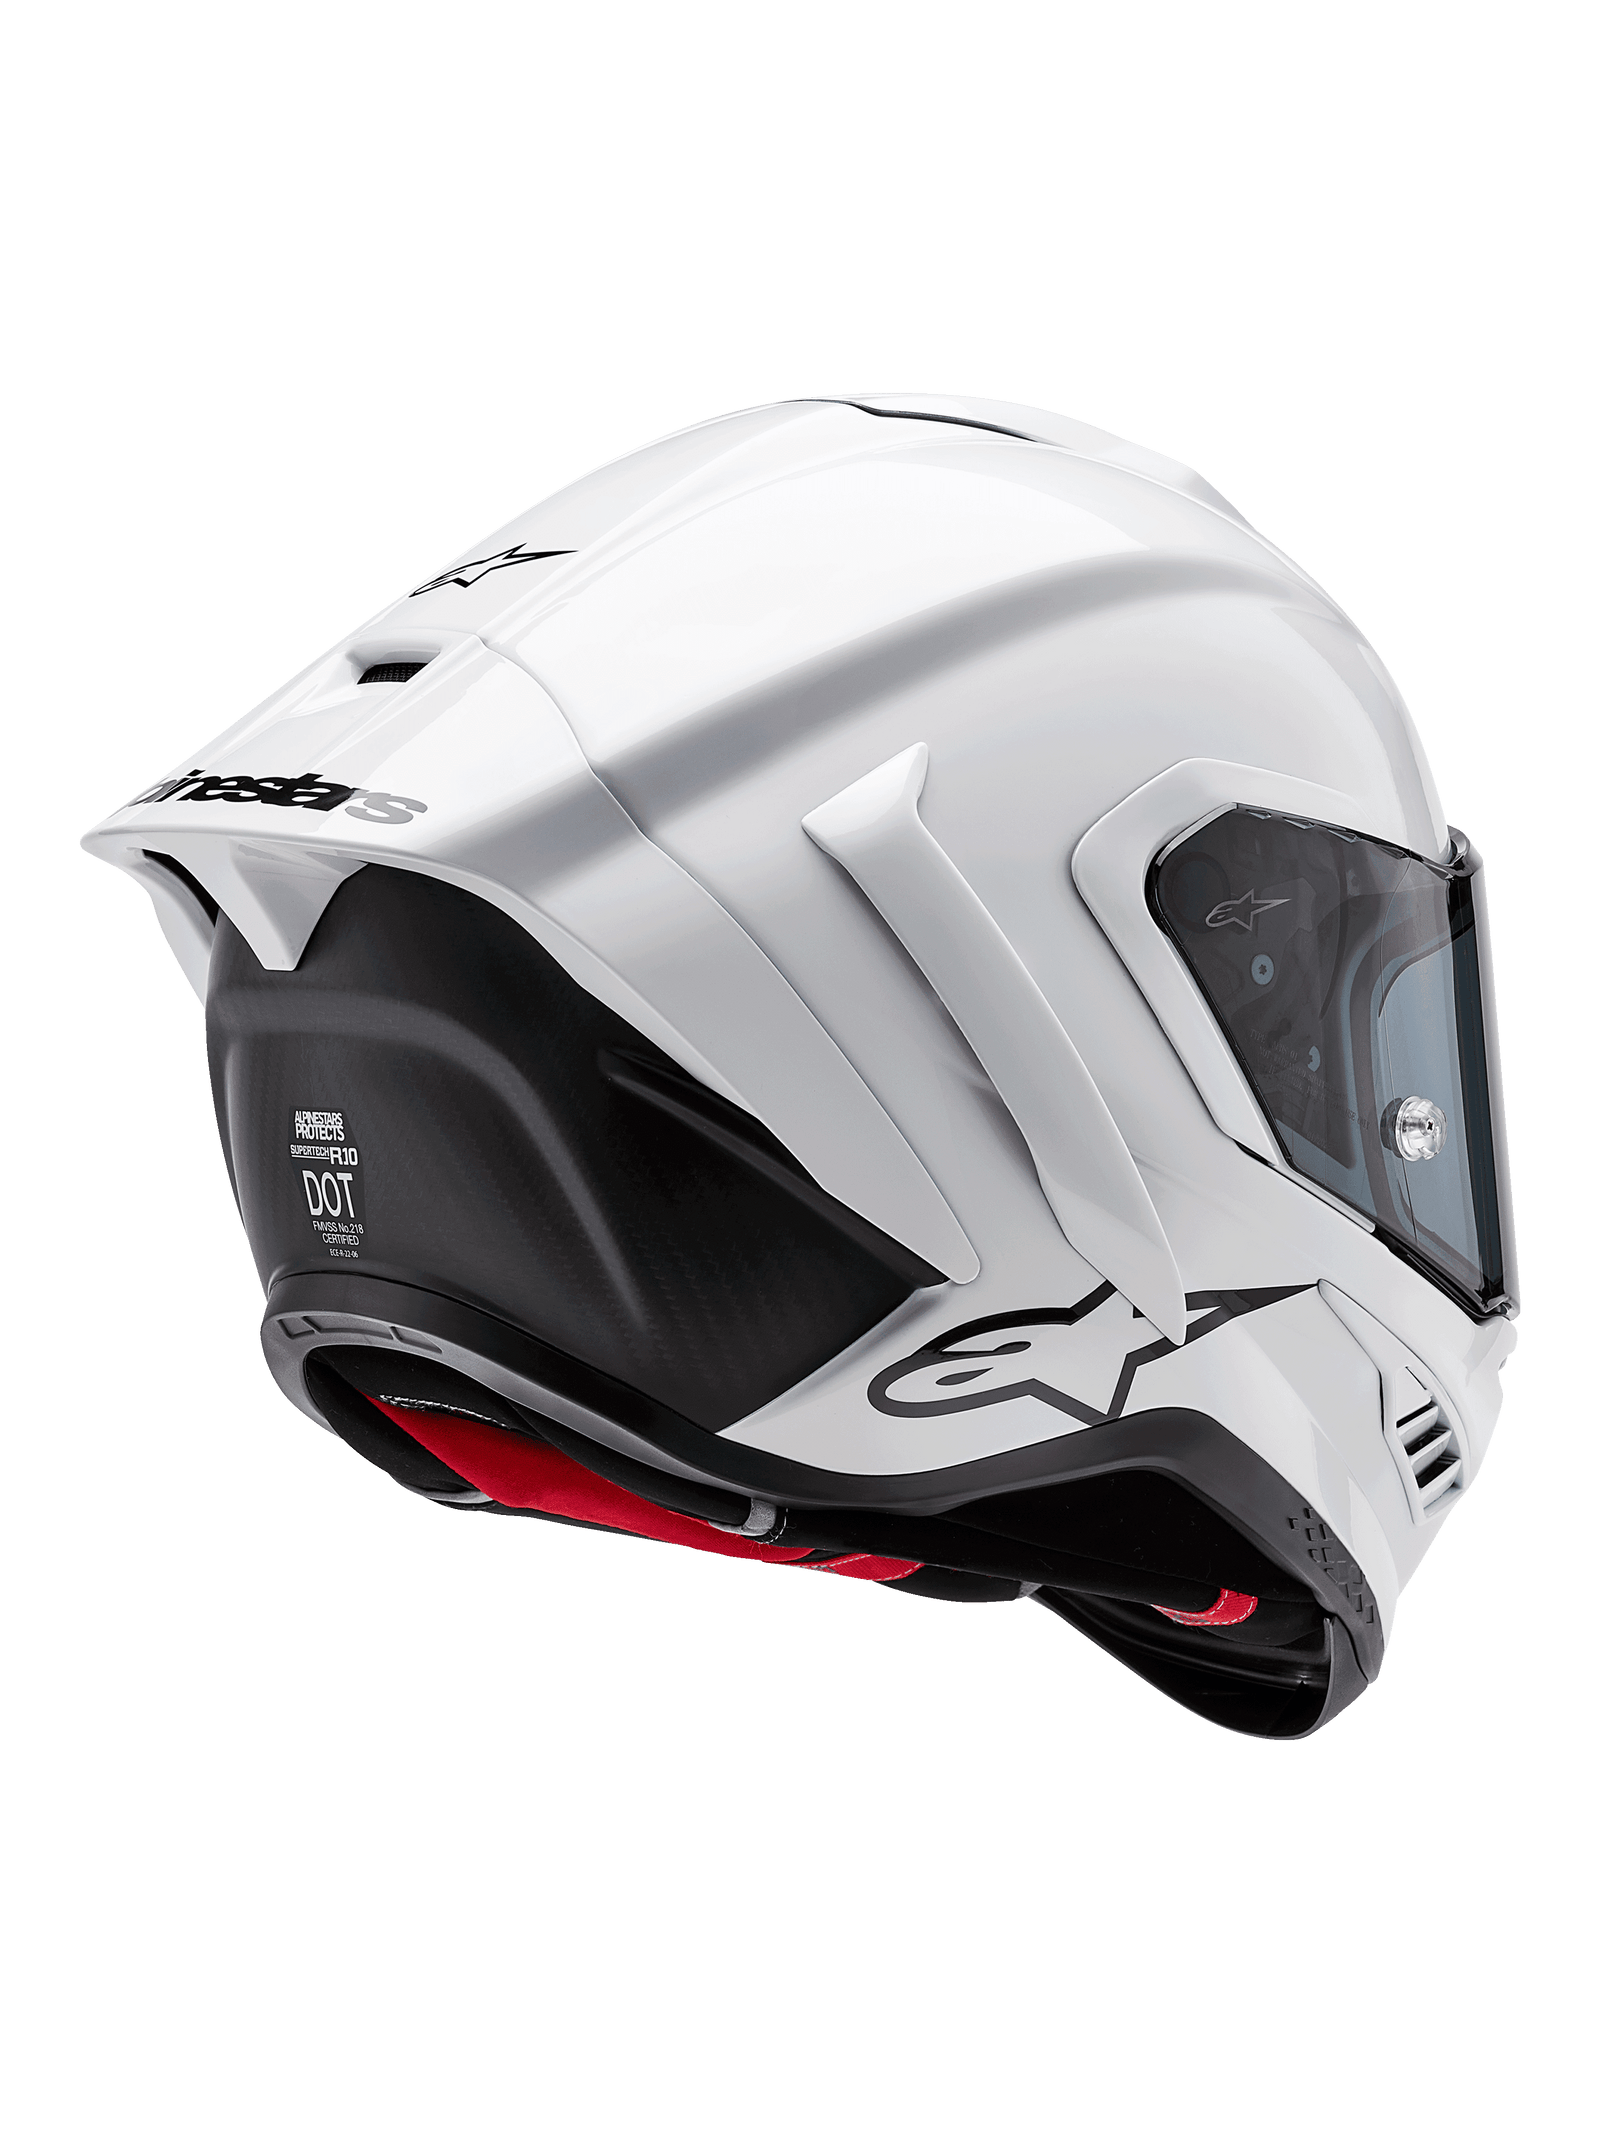 Supertech R10 Solid Helmet